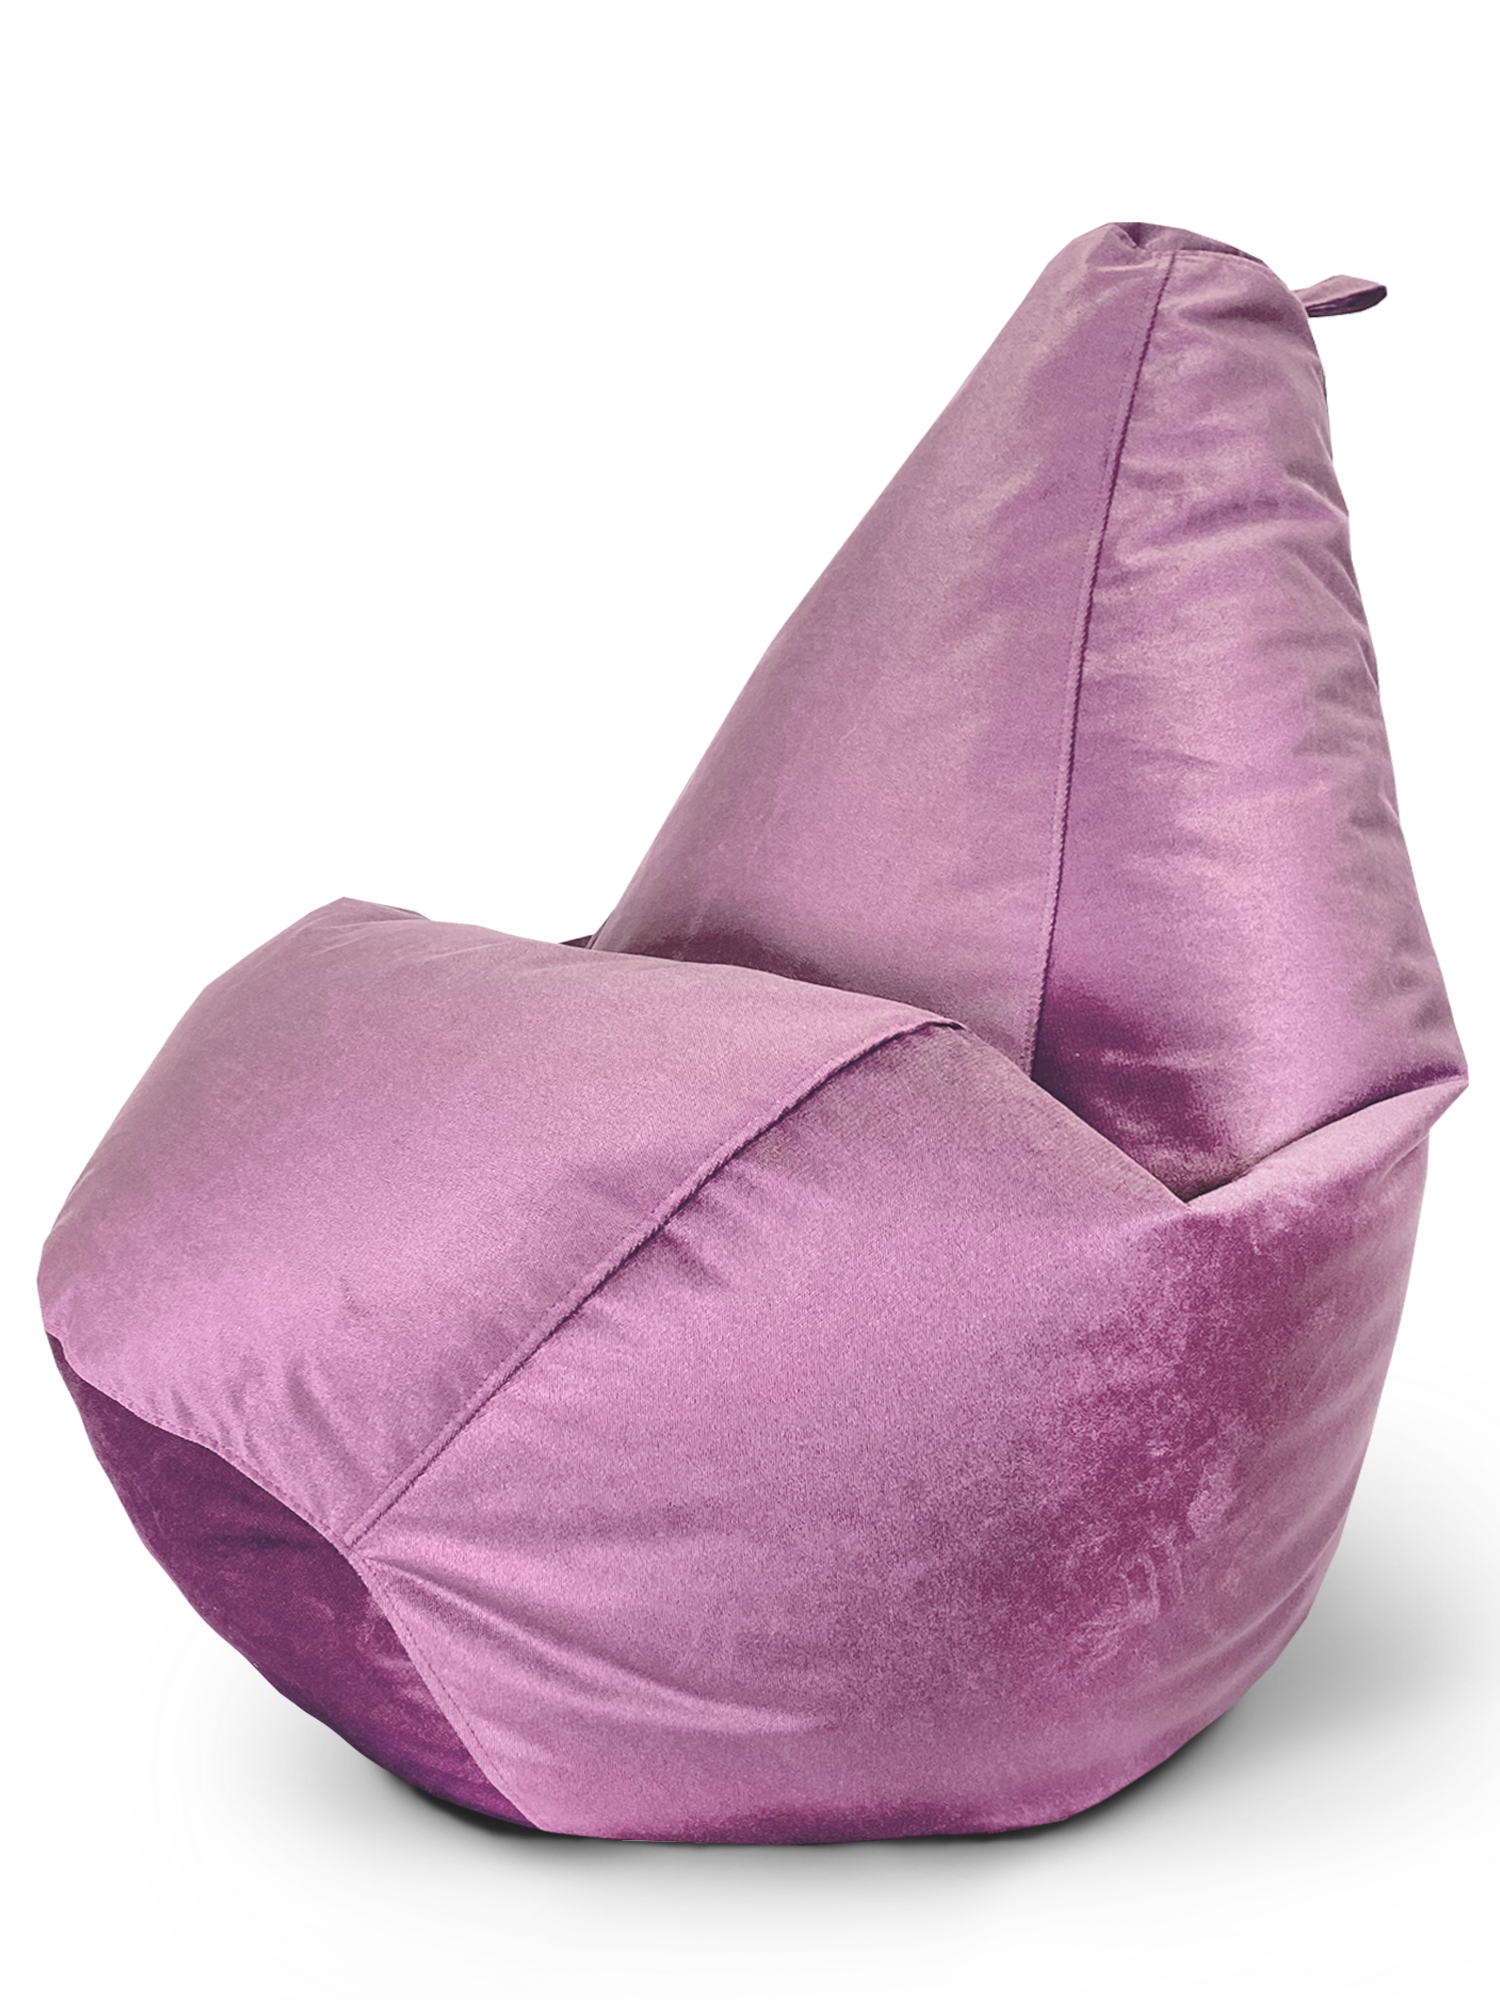 фото Кресло-мешок onpuff пуфик груша, размер хxxxl, розовый велюр